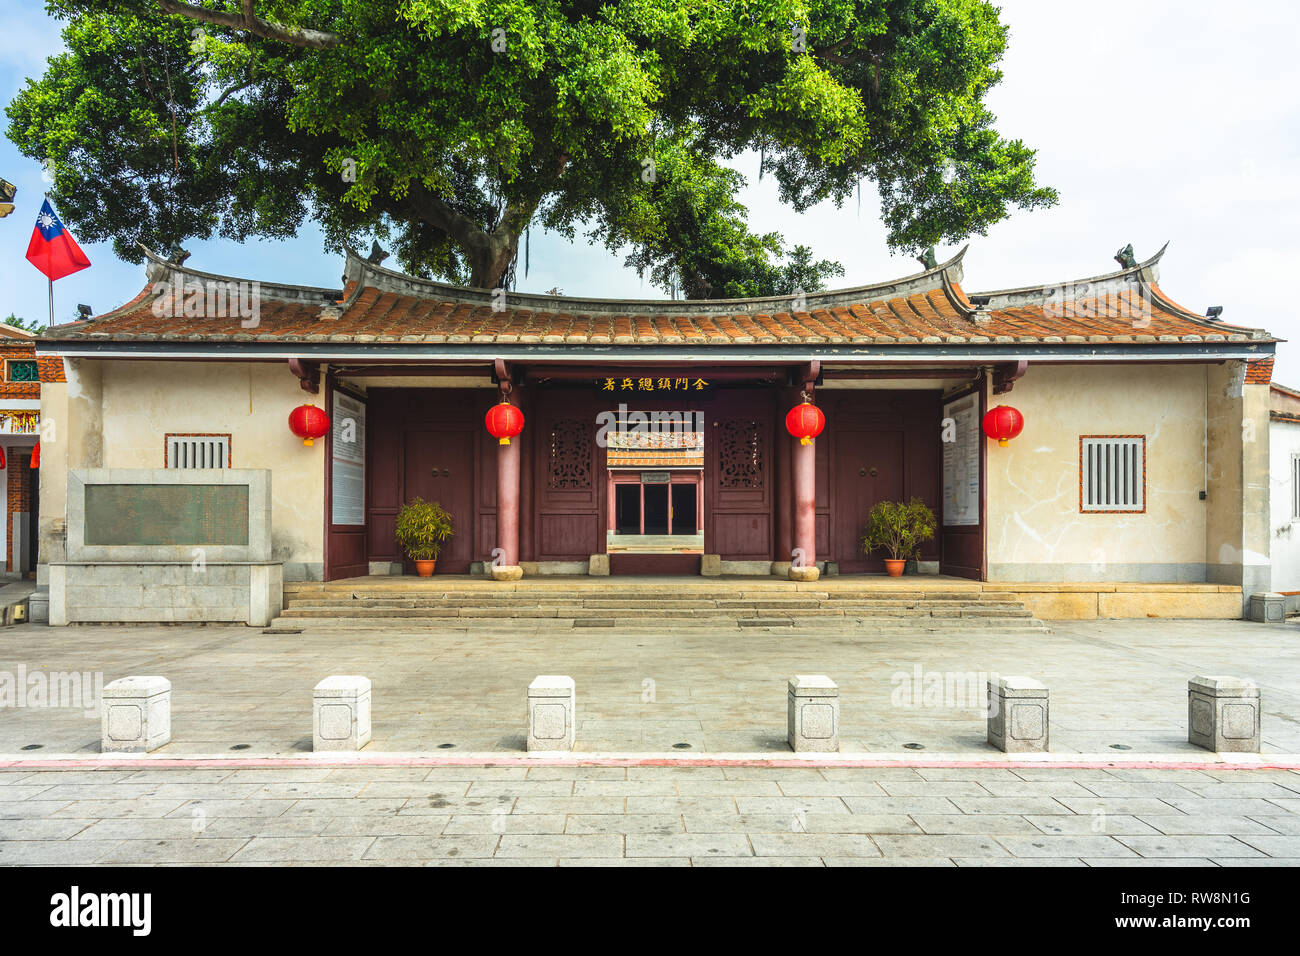 Historisches Gebäude in kinmen. Die chinesischen Schriftzeichen bedeuten "Kinmen militärisches Hauptquartier der Qing-dynastie' Stockfoto